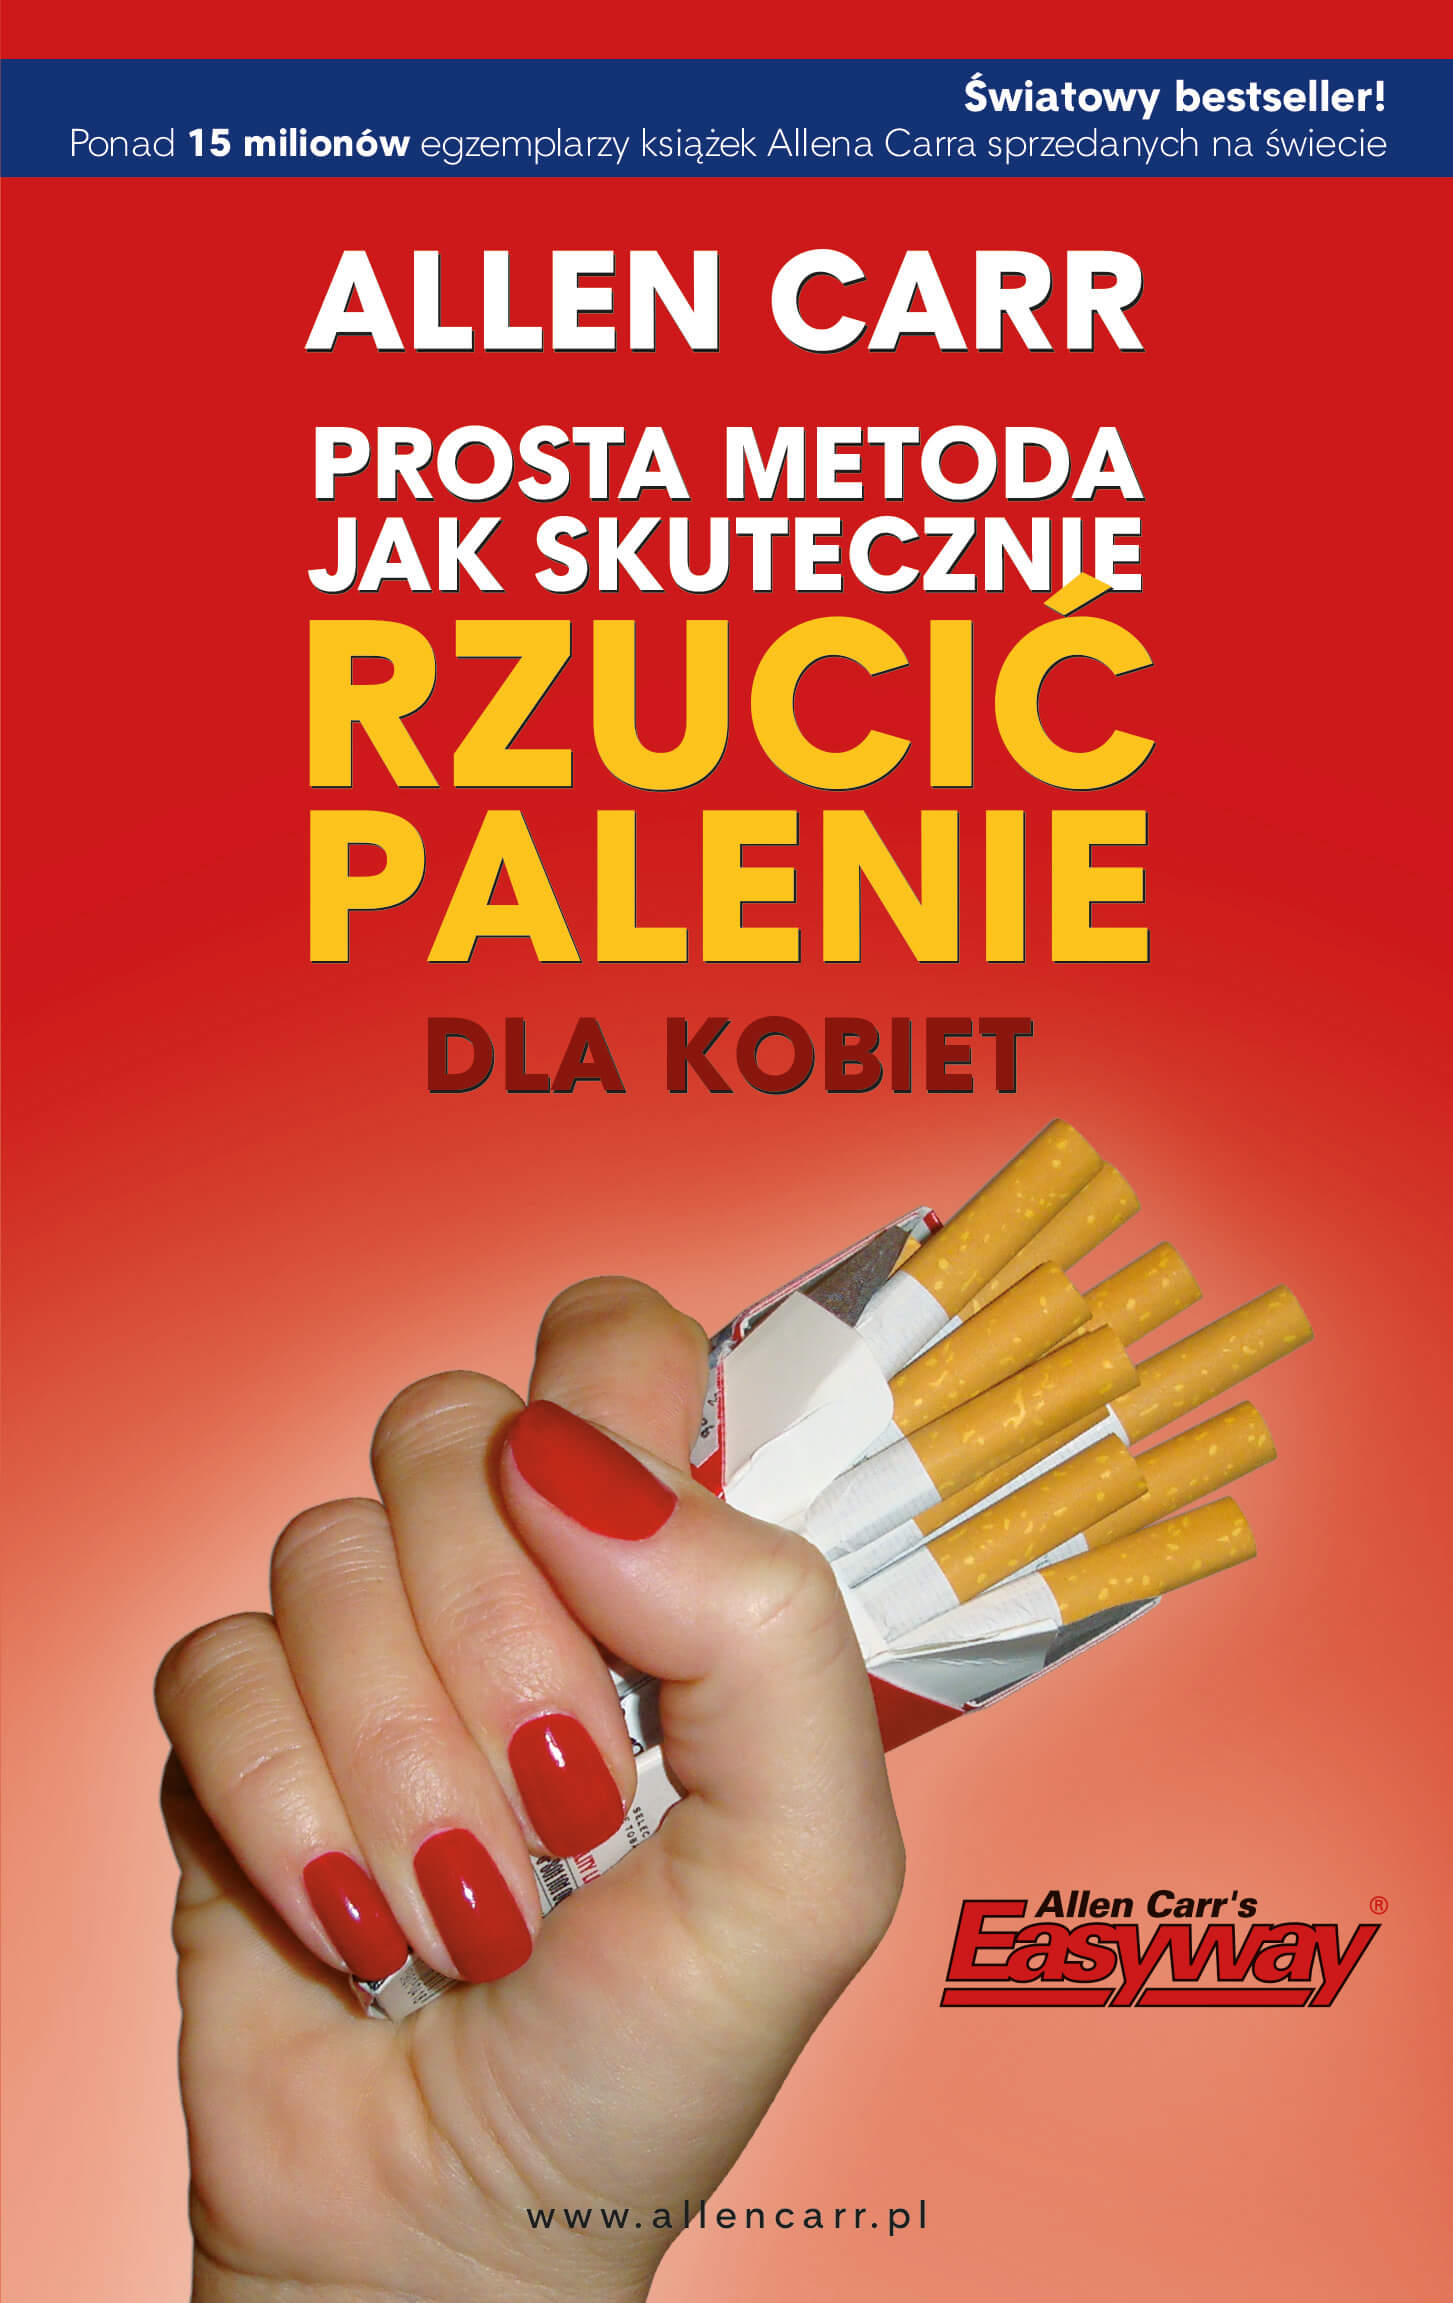 prosta-metoda-jak-skutecznie-rzucic-palenie dla kobiet_allen-carr-ksiazka-najlepsza ksiazka o rzucaniu palenia-jak skutecznie rzucic palenie - ksiazka - sklep internetowy-bestseller-5